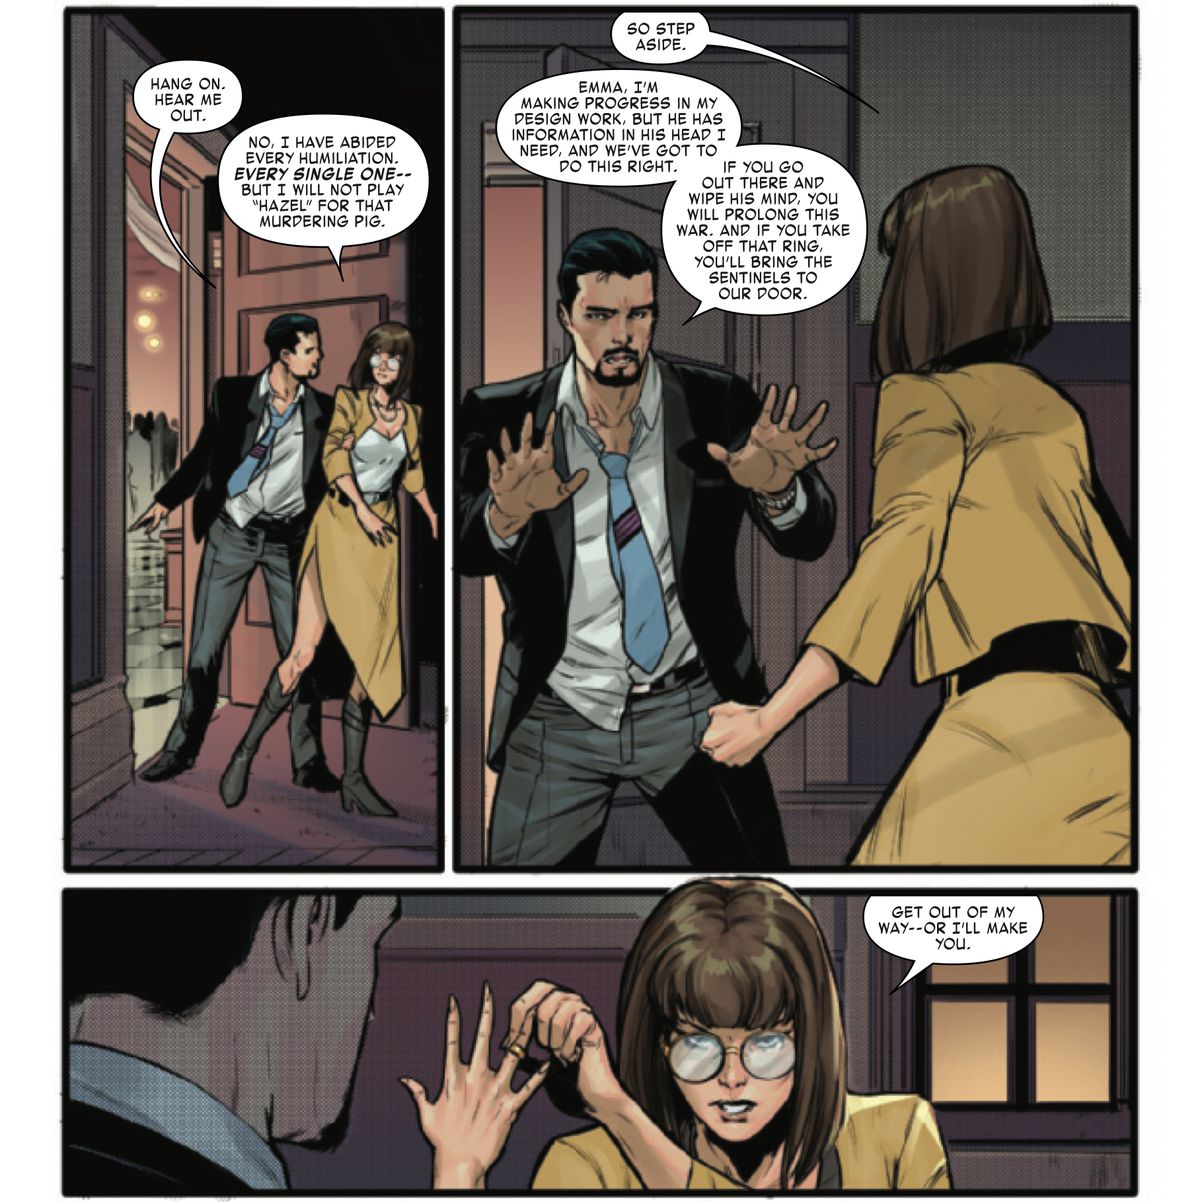 Tony Stark och en förklädd Emma Frost bråkar ensamma i en korridor.  Tony försöker övertyga henne om att om hon tar av sin kraftdämpande ring för att torka Feilongs sinne, kommer de att förlora värdefull information och Sentinels kommer att larmas.  